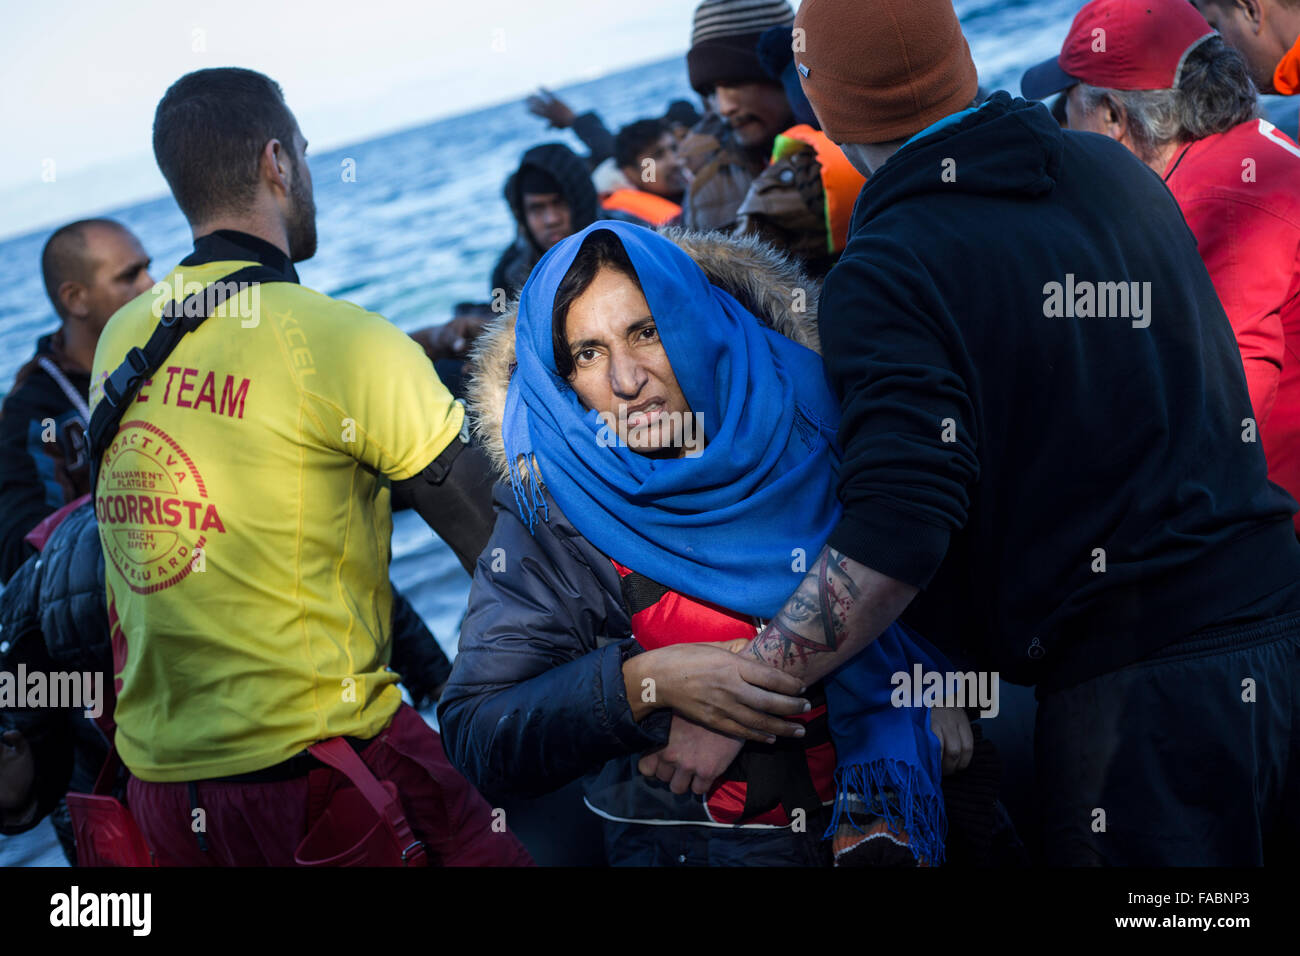 L'île de Lesvos, Grèce. Dec 26, 2015. Une femme afghane débarque sur la rive quelques minutes après son arrivée avec d'autres réfugiés et migrants dans un canot en caoutchouc voile venant de la côte turque à Skala Sikamineas sur l'île de Lesvos, Grèce, 26 décembre 2015. Photo : Baltagiannis Socrates/dpa/Alamy Live News Banque D'Images